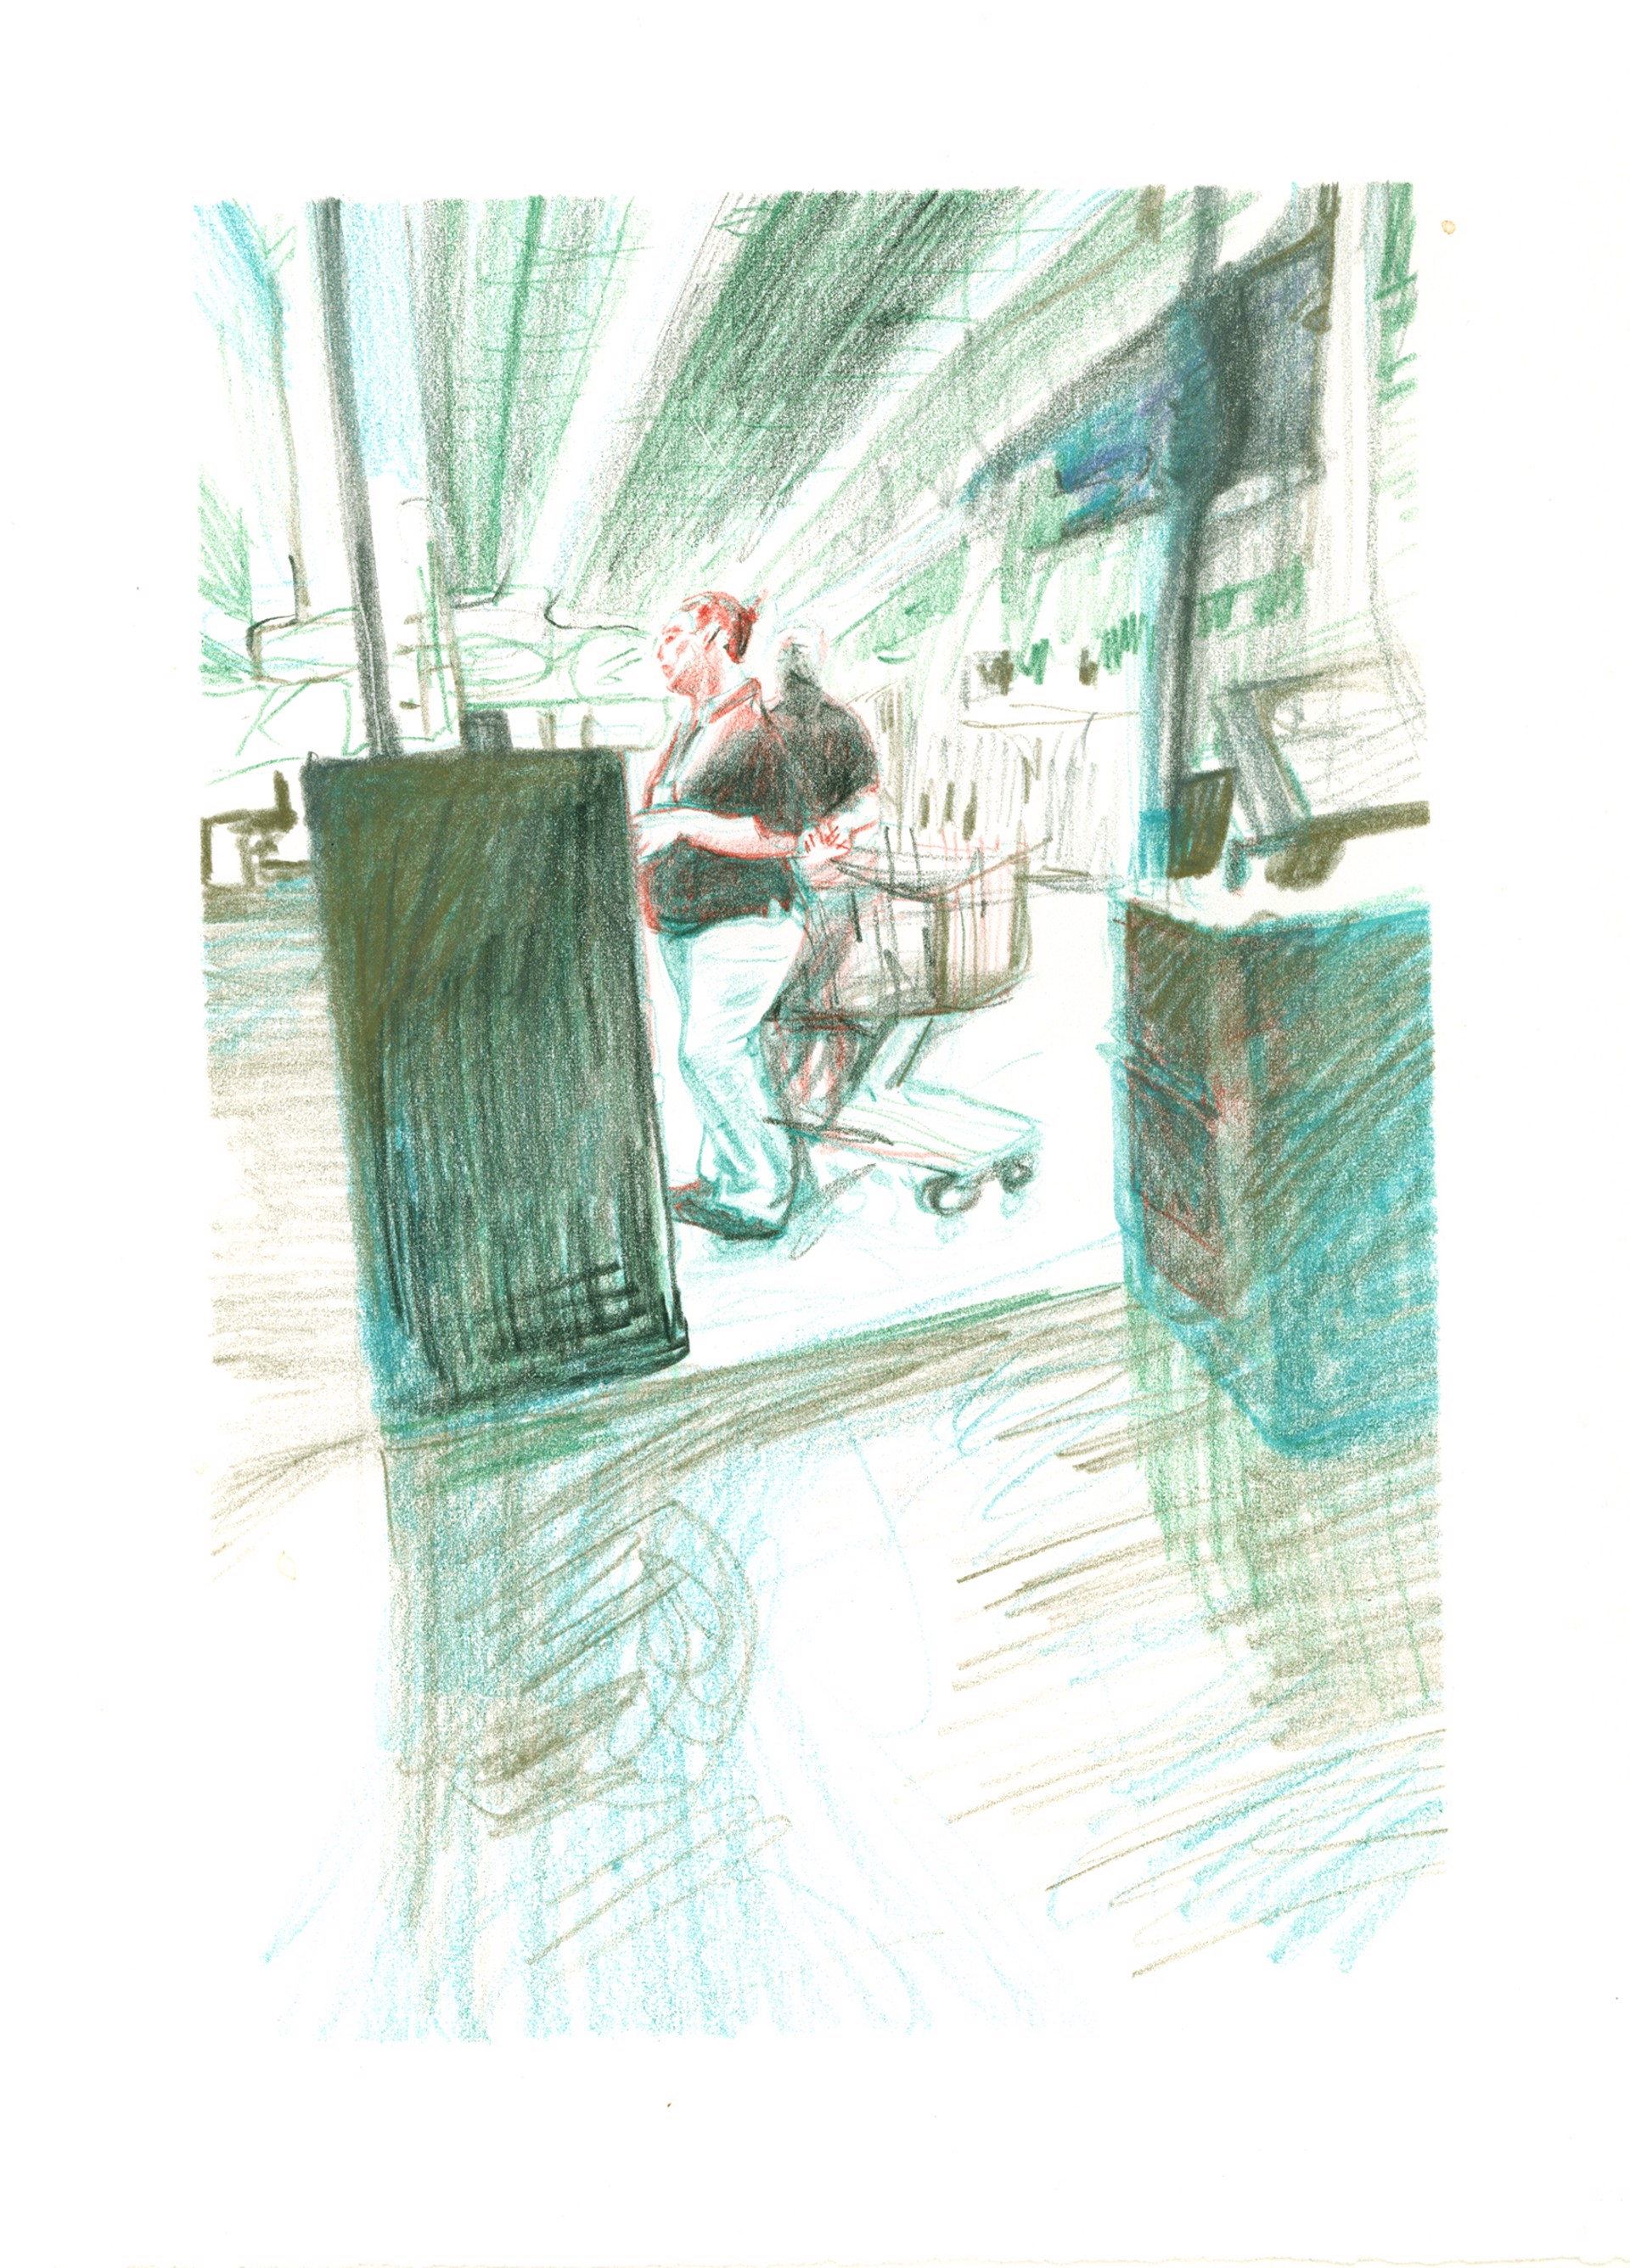 Marketplace/Cashier #18 by Eilis Crean